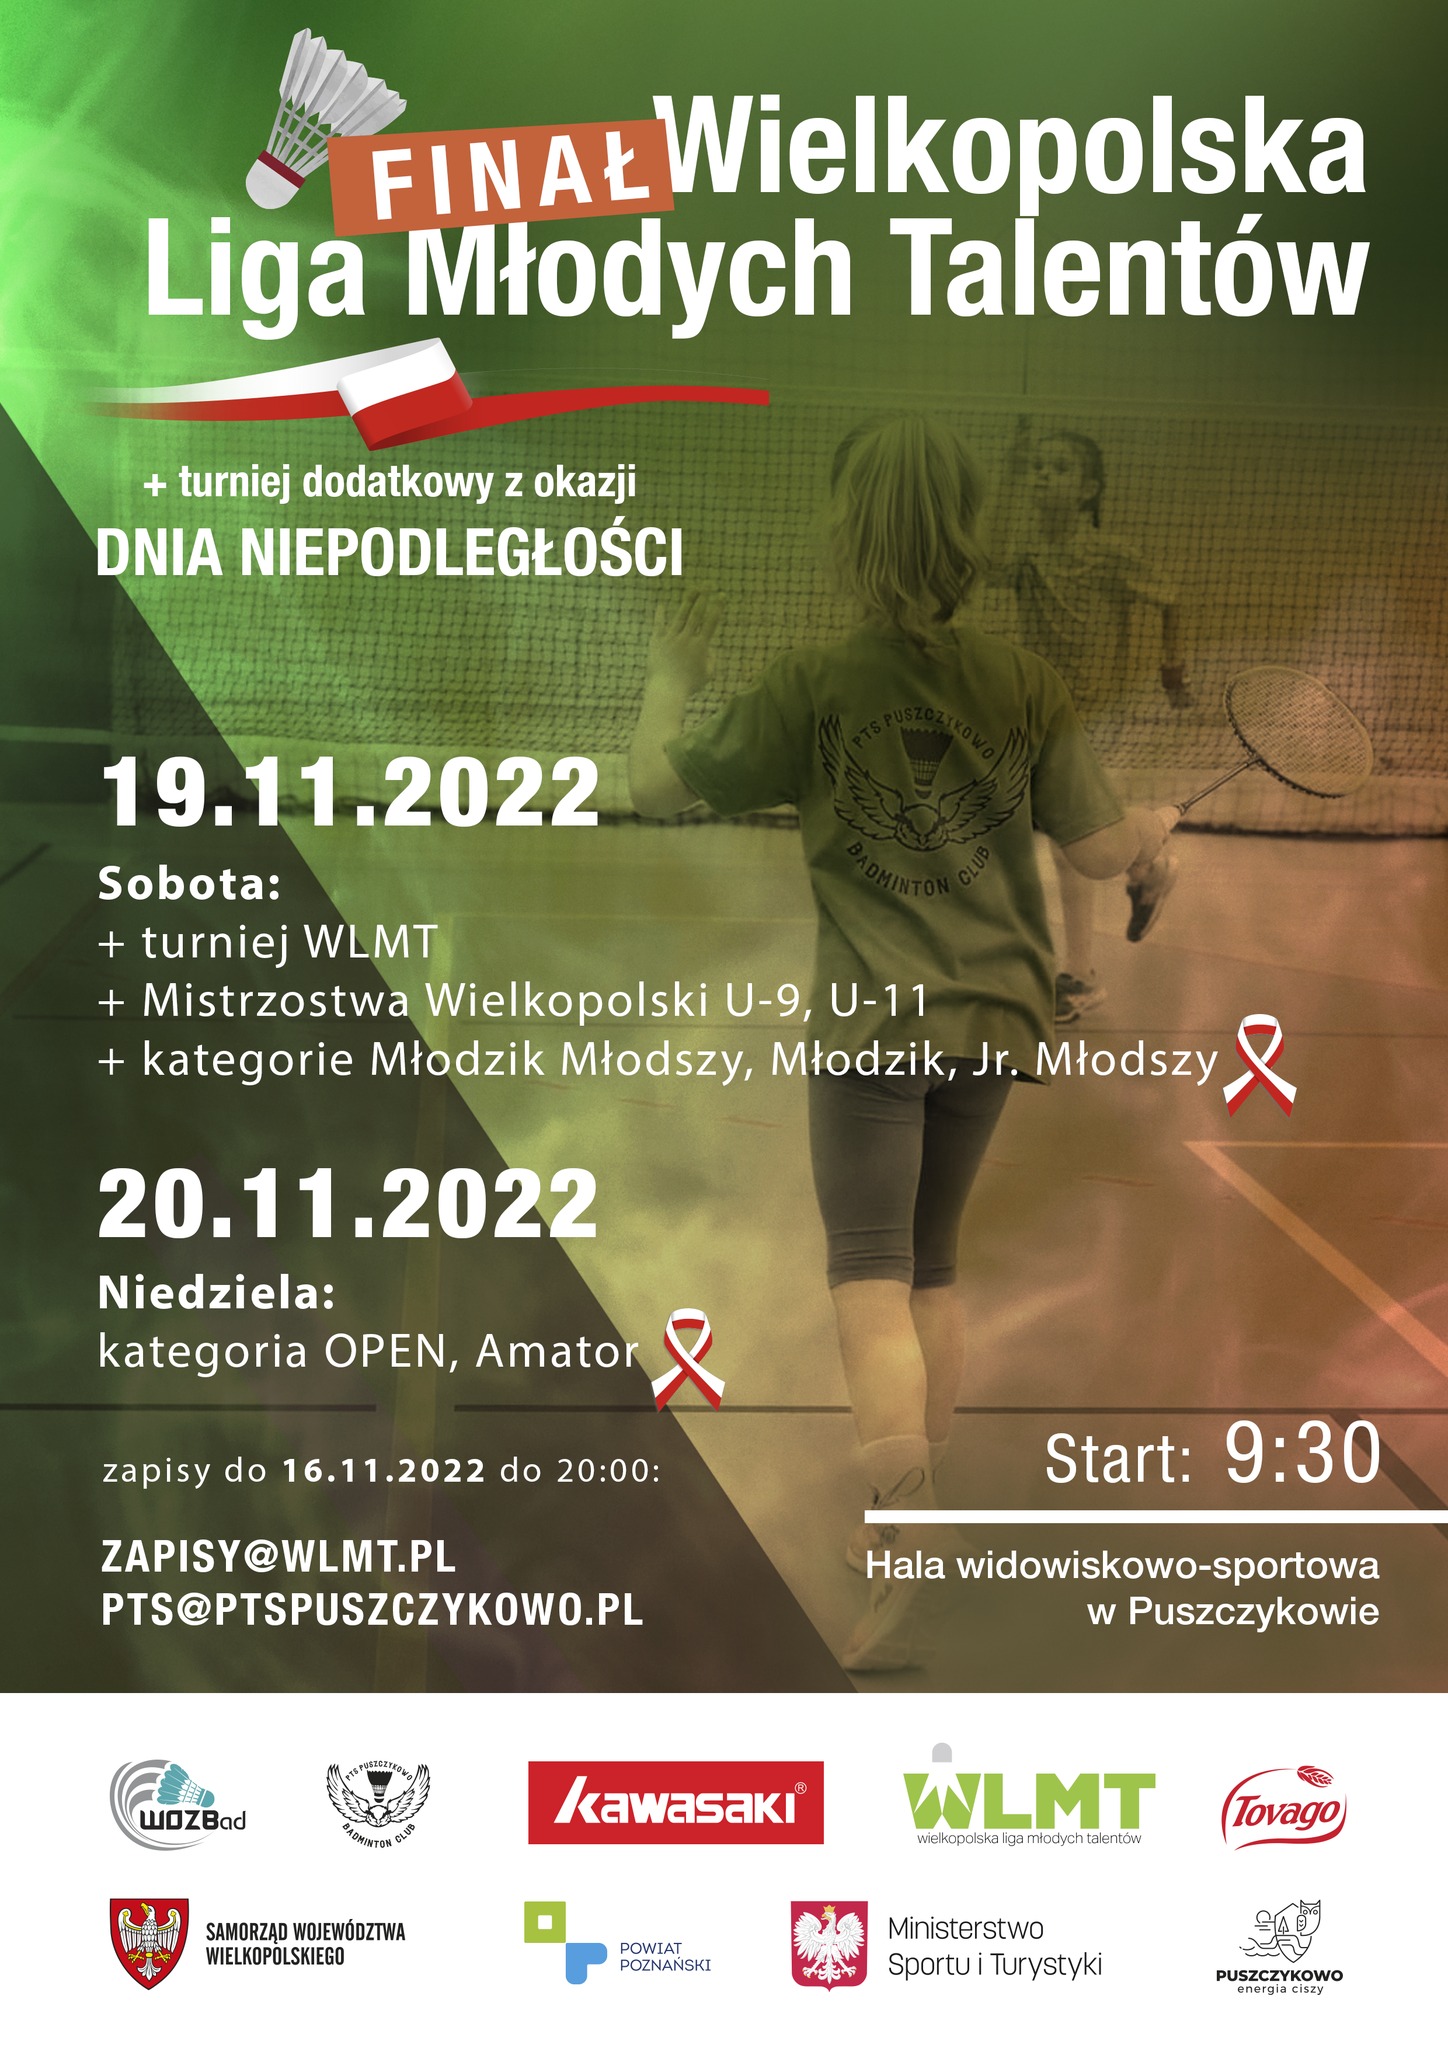 Wielkopolski Okręgowy Związek Badmintona i Puszczykowskie Towarzystwo Sportowe serdecznie zapraszają na Finał Wielkopolskiej Ligi Młodych Talentów i Turniej dodatkowy z okazji Dnia Niepodległości.